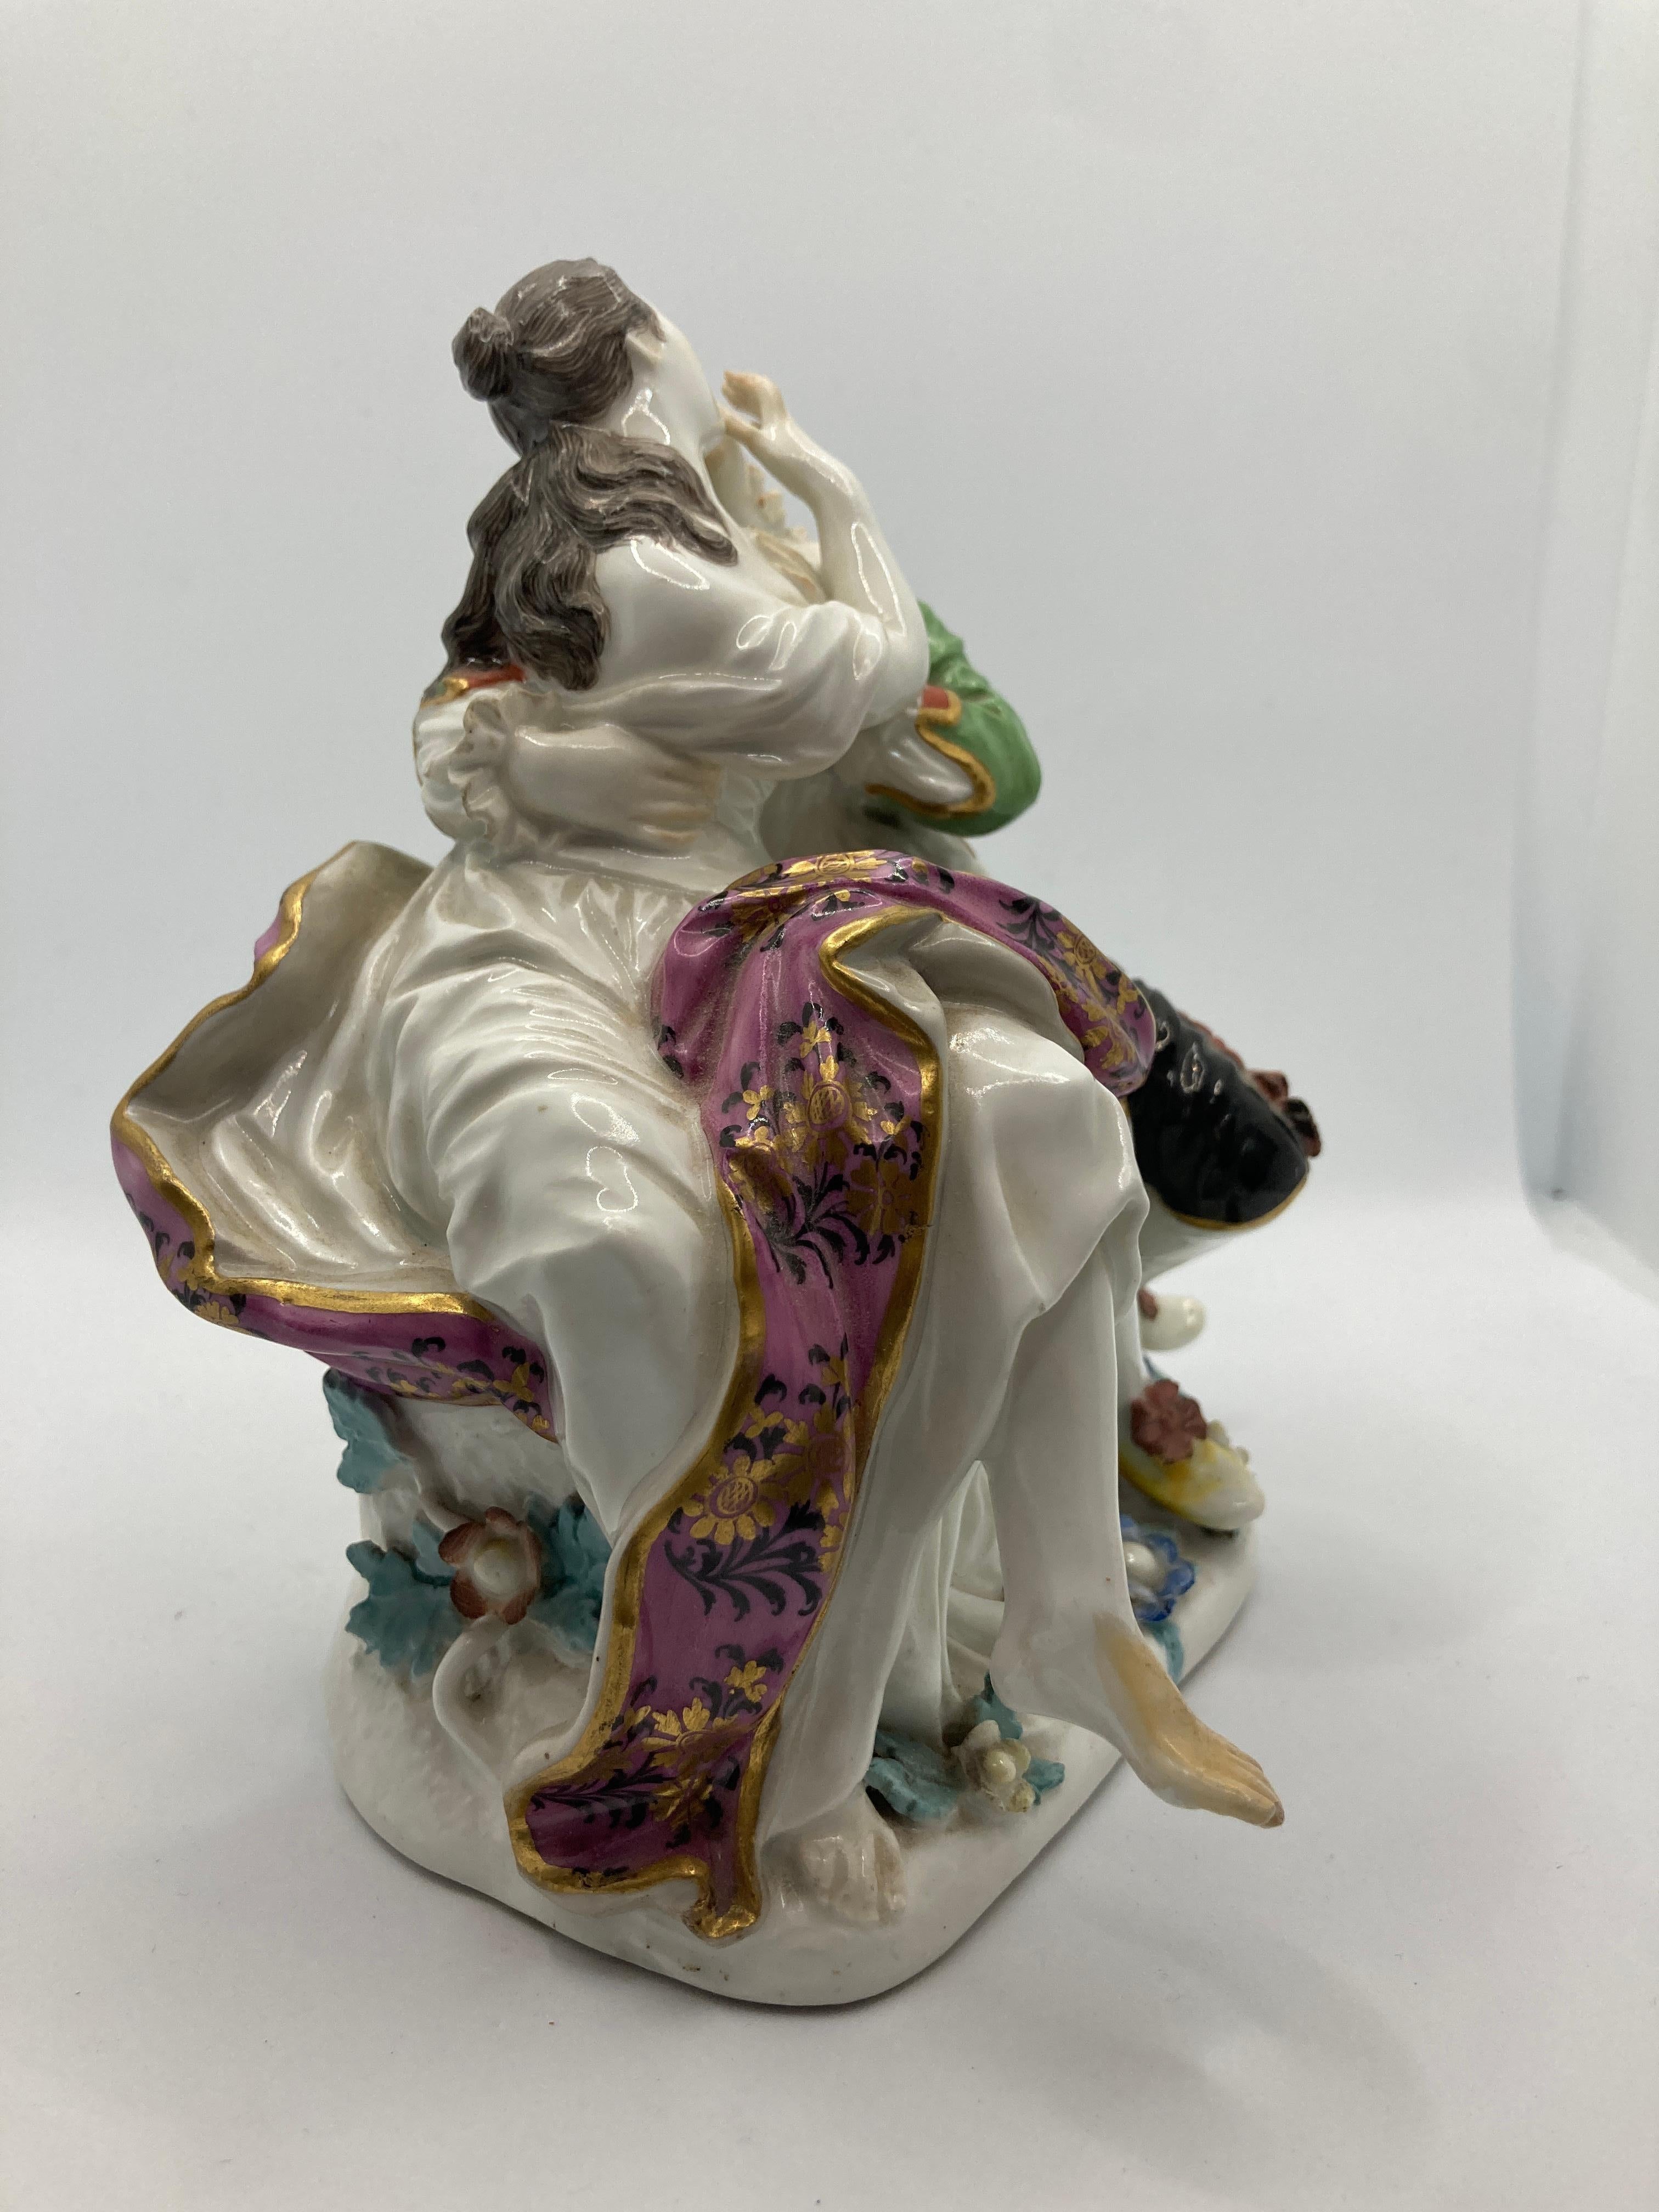 Figurine en porcelaine de Meissen du XVIIIe siècle, 